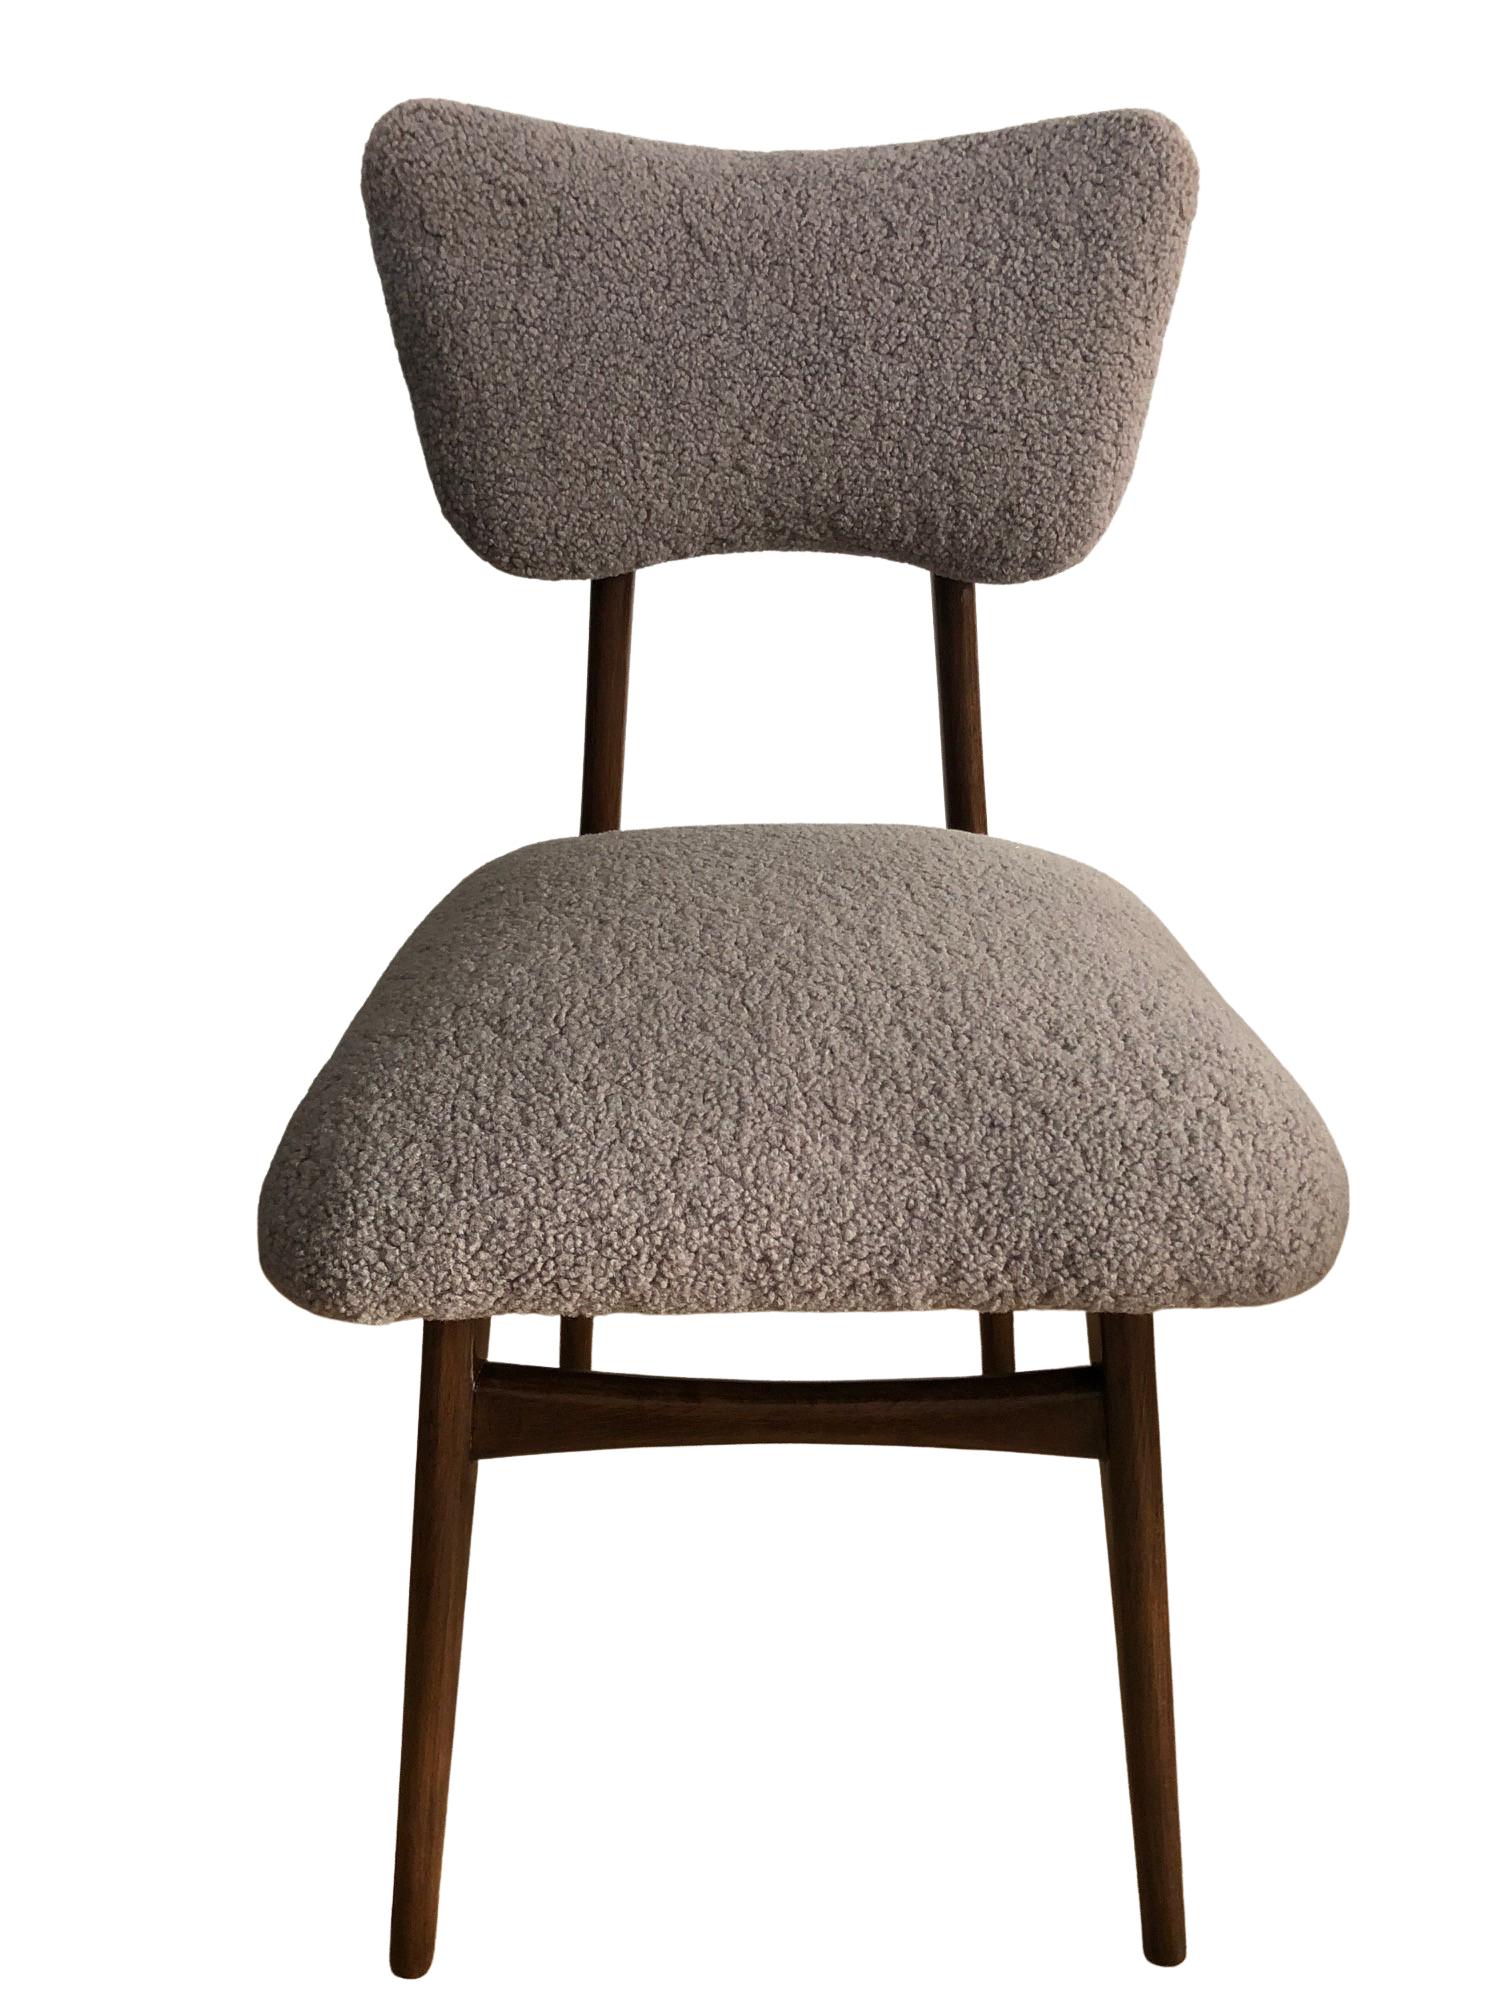 Ensemble unique de deux chaises fabriquées en Pologne dans les années 1960, conçues par Rajmund Halas. 

Le rembourrage est en textile bouclé agréable au toucher. Il s'agit d'un tissu italien de haute qualité et durable dans une couleur taupe chaude